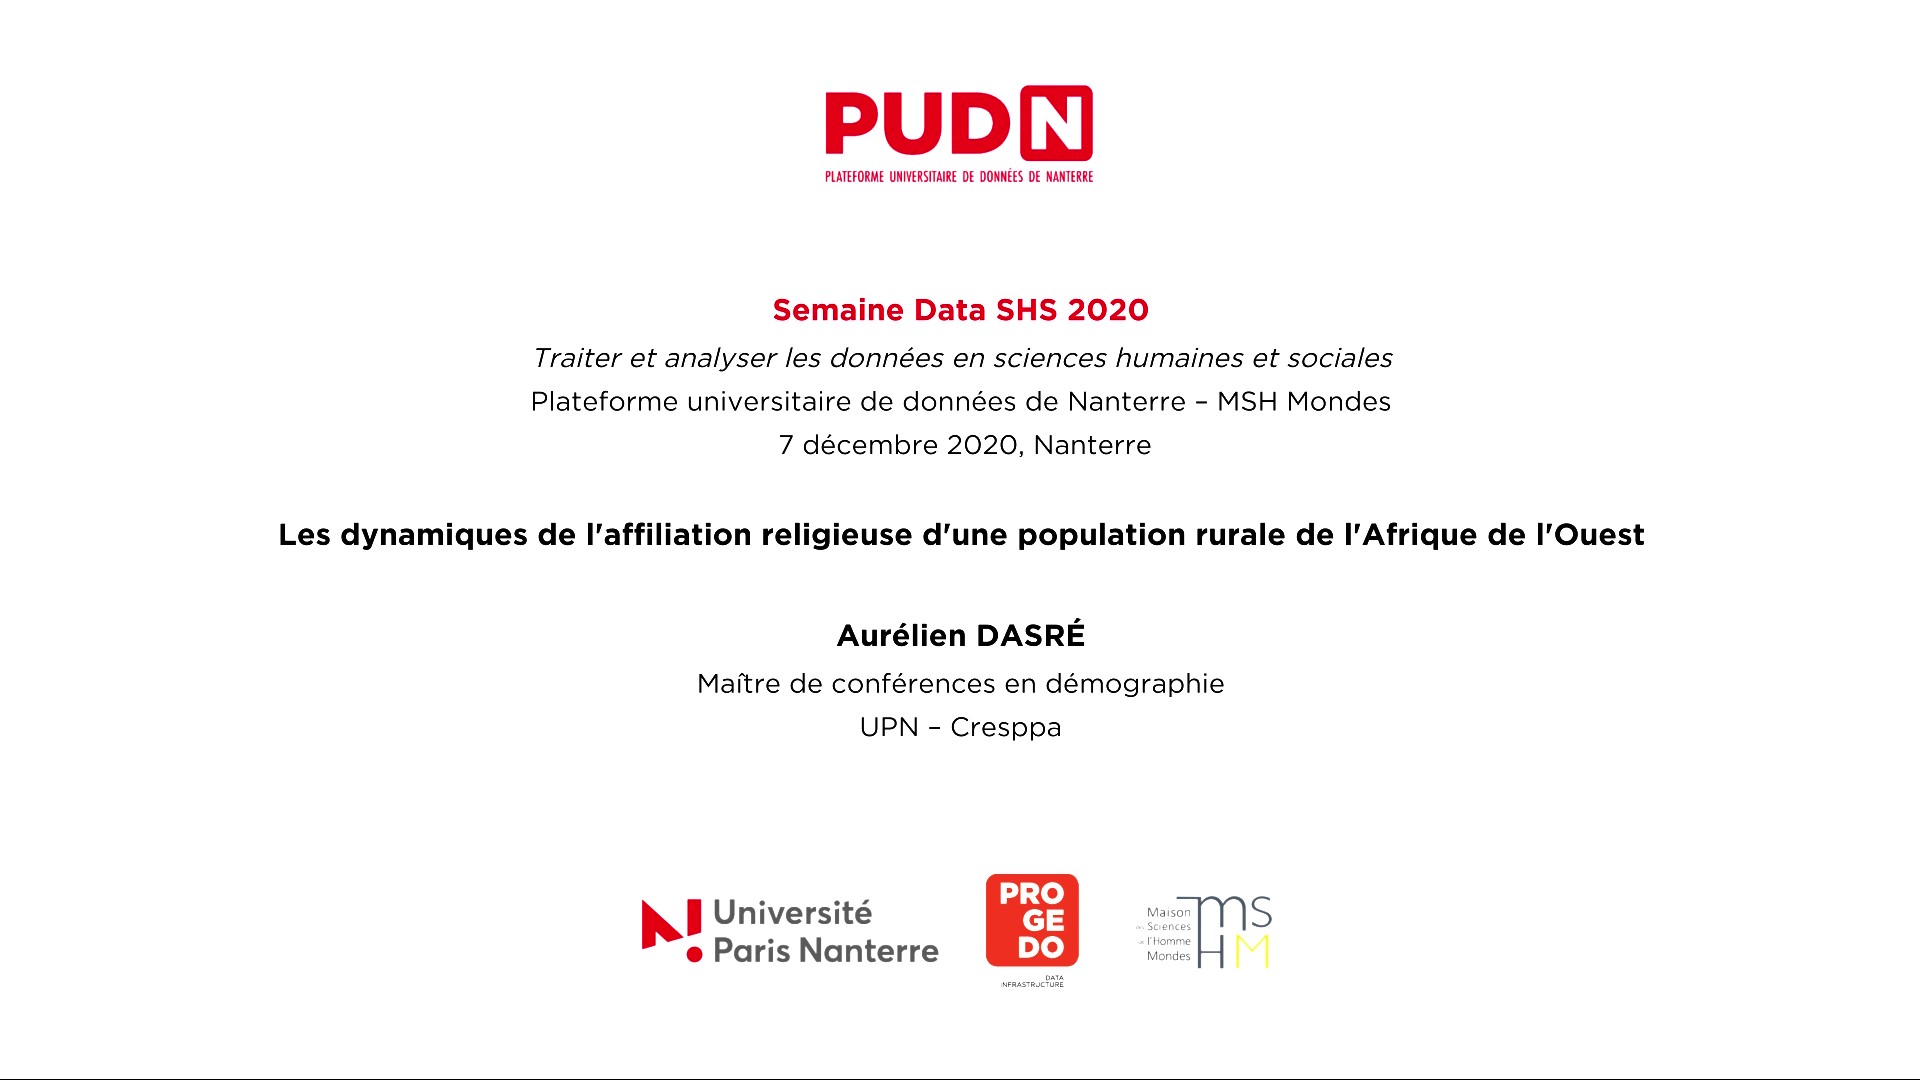 Les dynamiques de l'affiliation religieuse d'une population rurale de l'Afrique de l'Ouest - PUDN